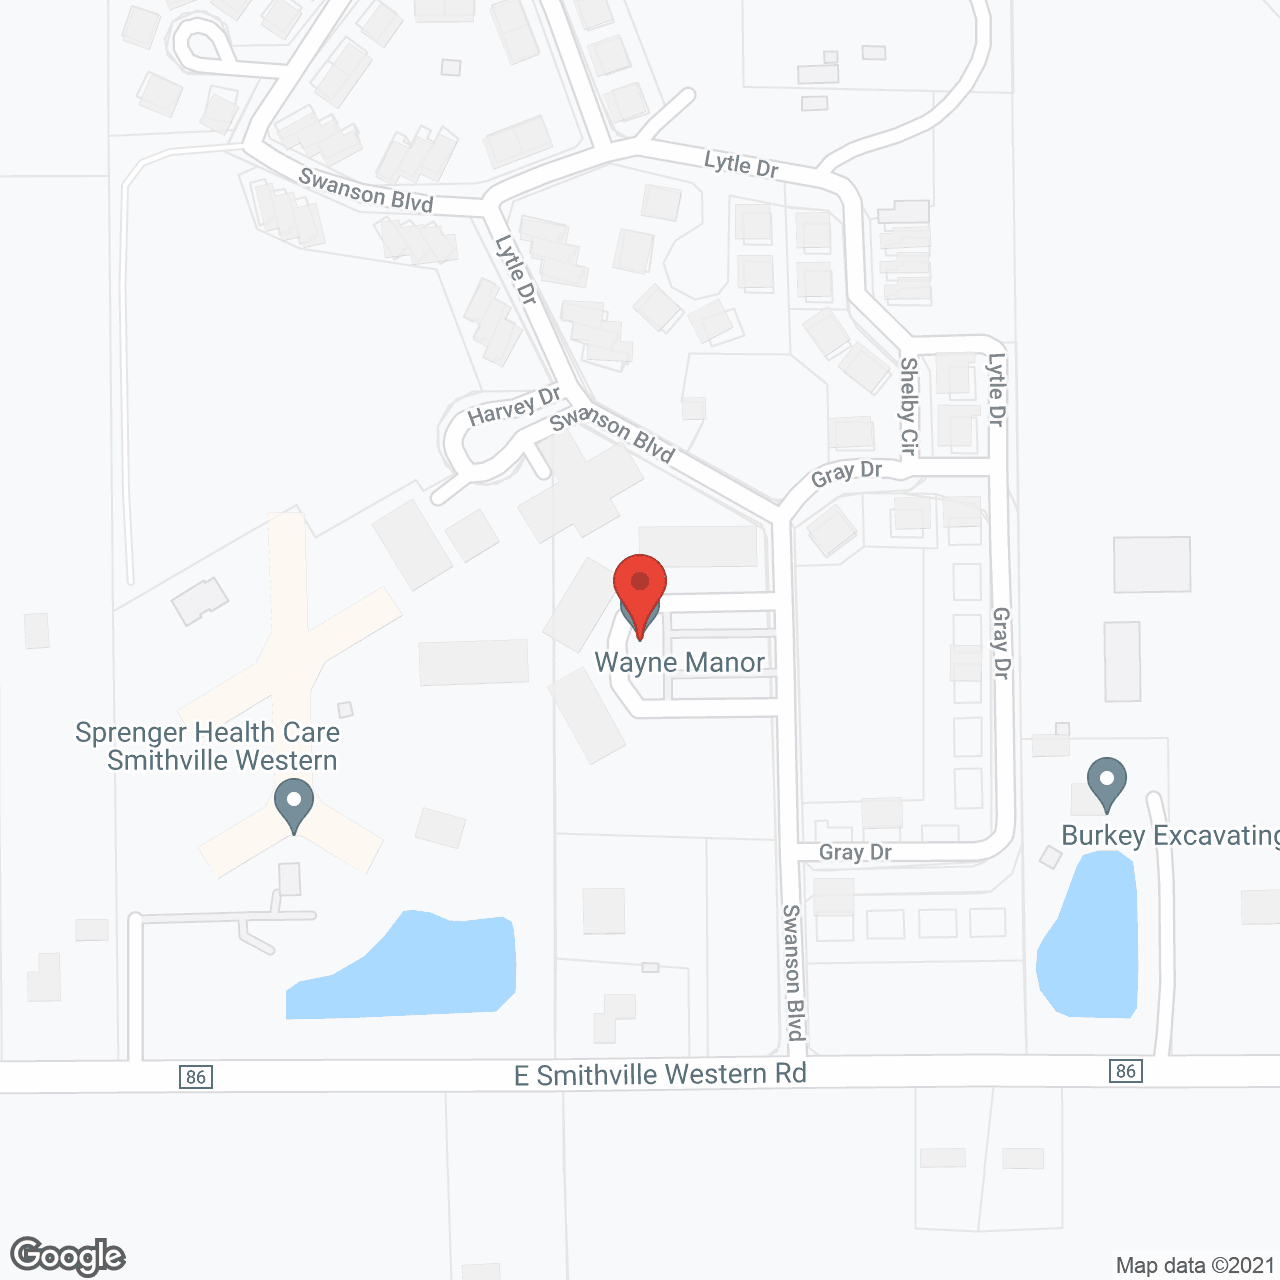 Wayne Manor in google map